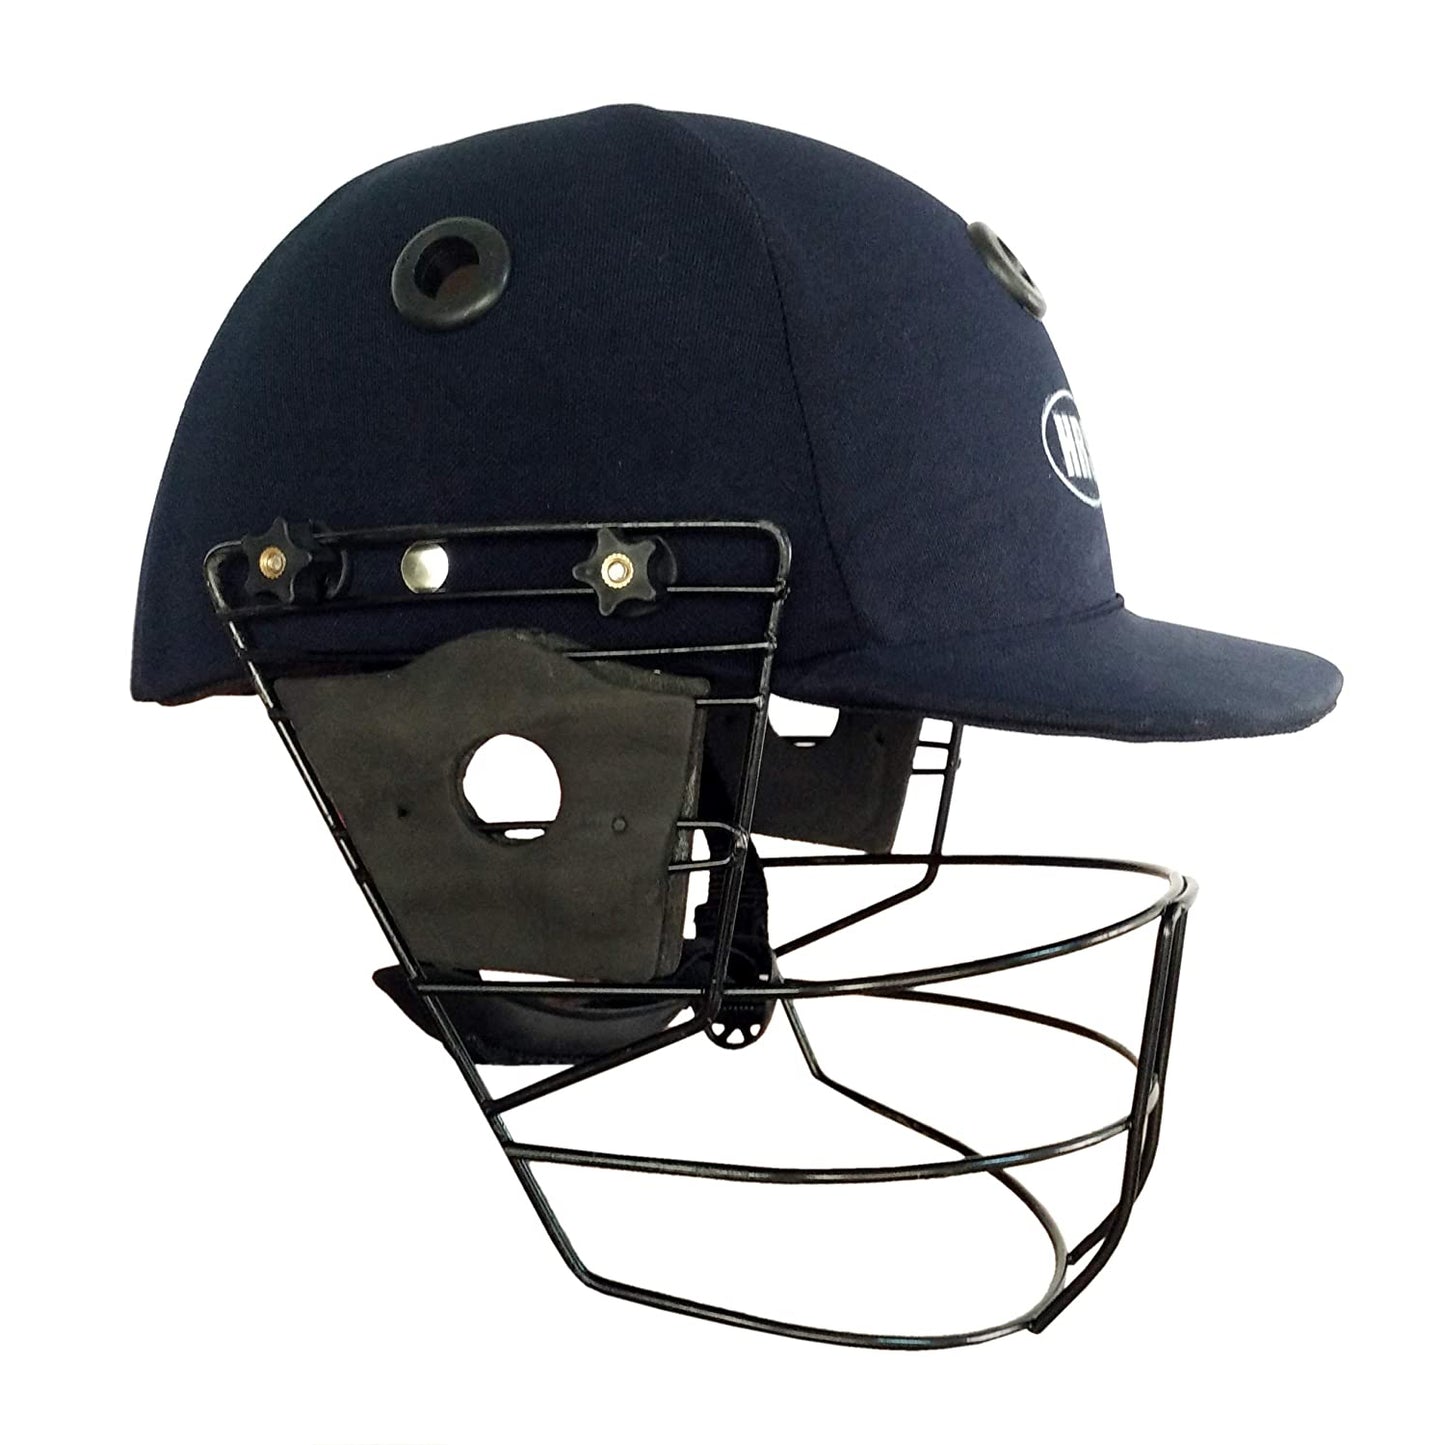 HRS Practice Cricket Helmet - Best Price online Prokicksports.com